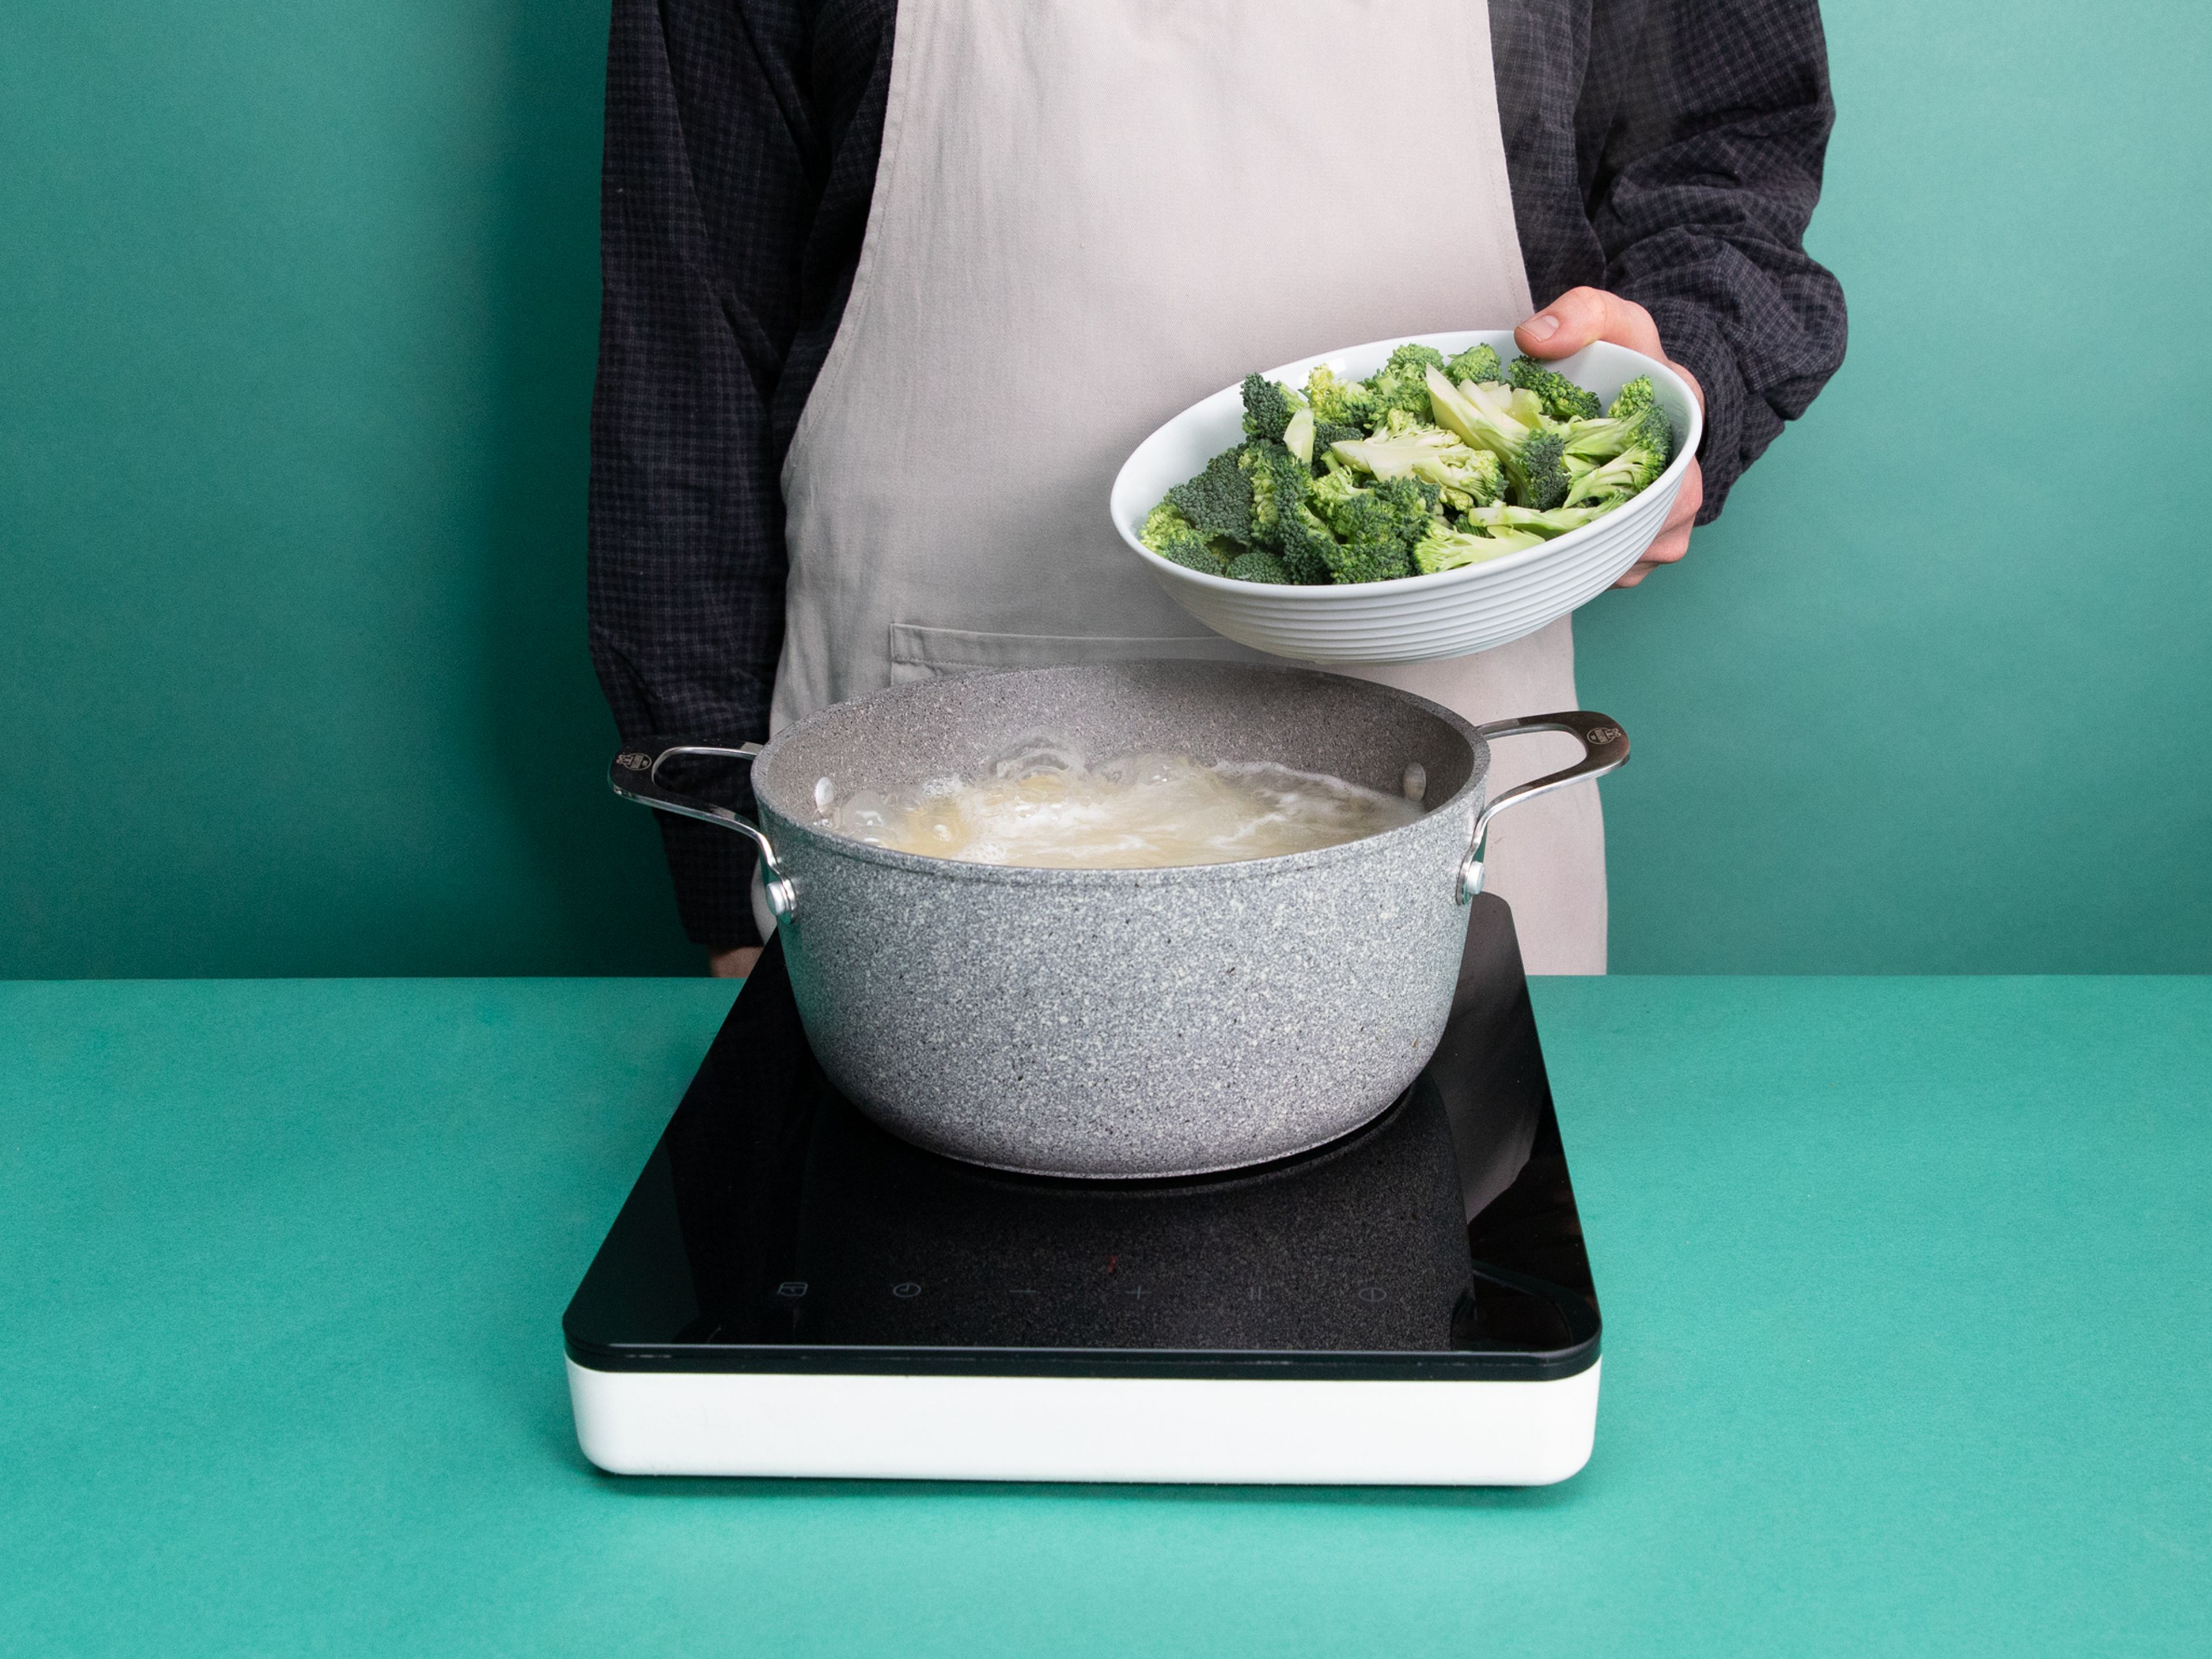 Wasser in einem Topf zum Kochen bringen, salzen, dann Spaghetti al dente kochen. Brokkoli dazugeben und ca. 3 Min. mitkochen, danach abgießen.